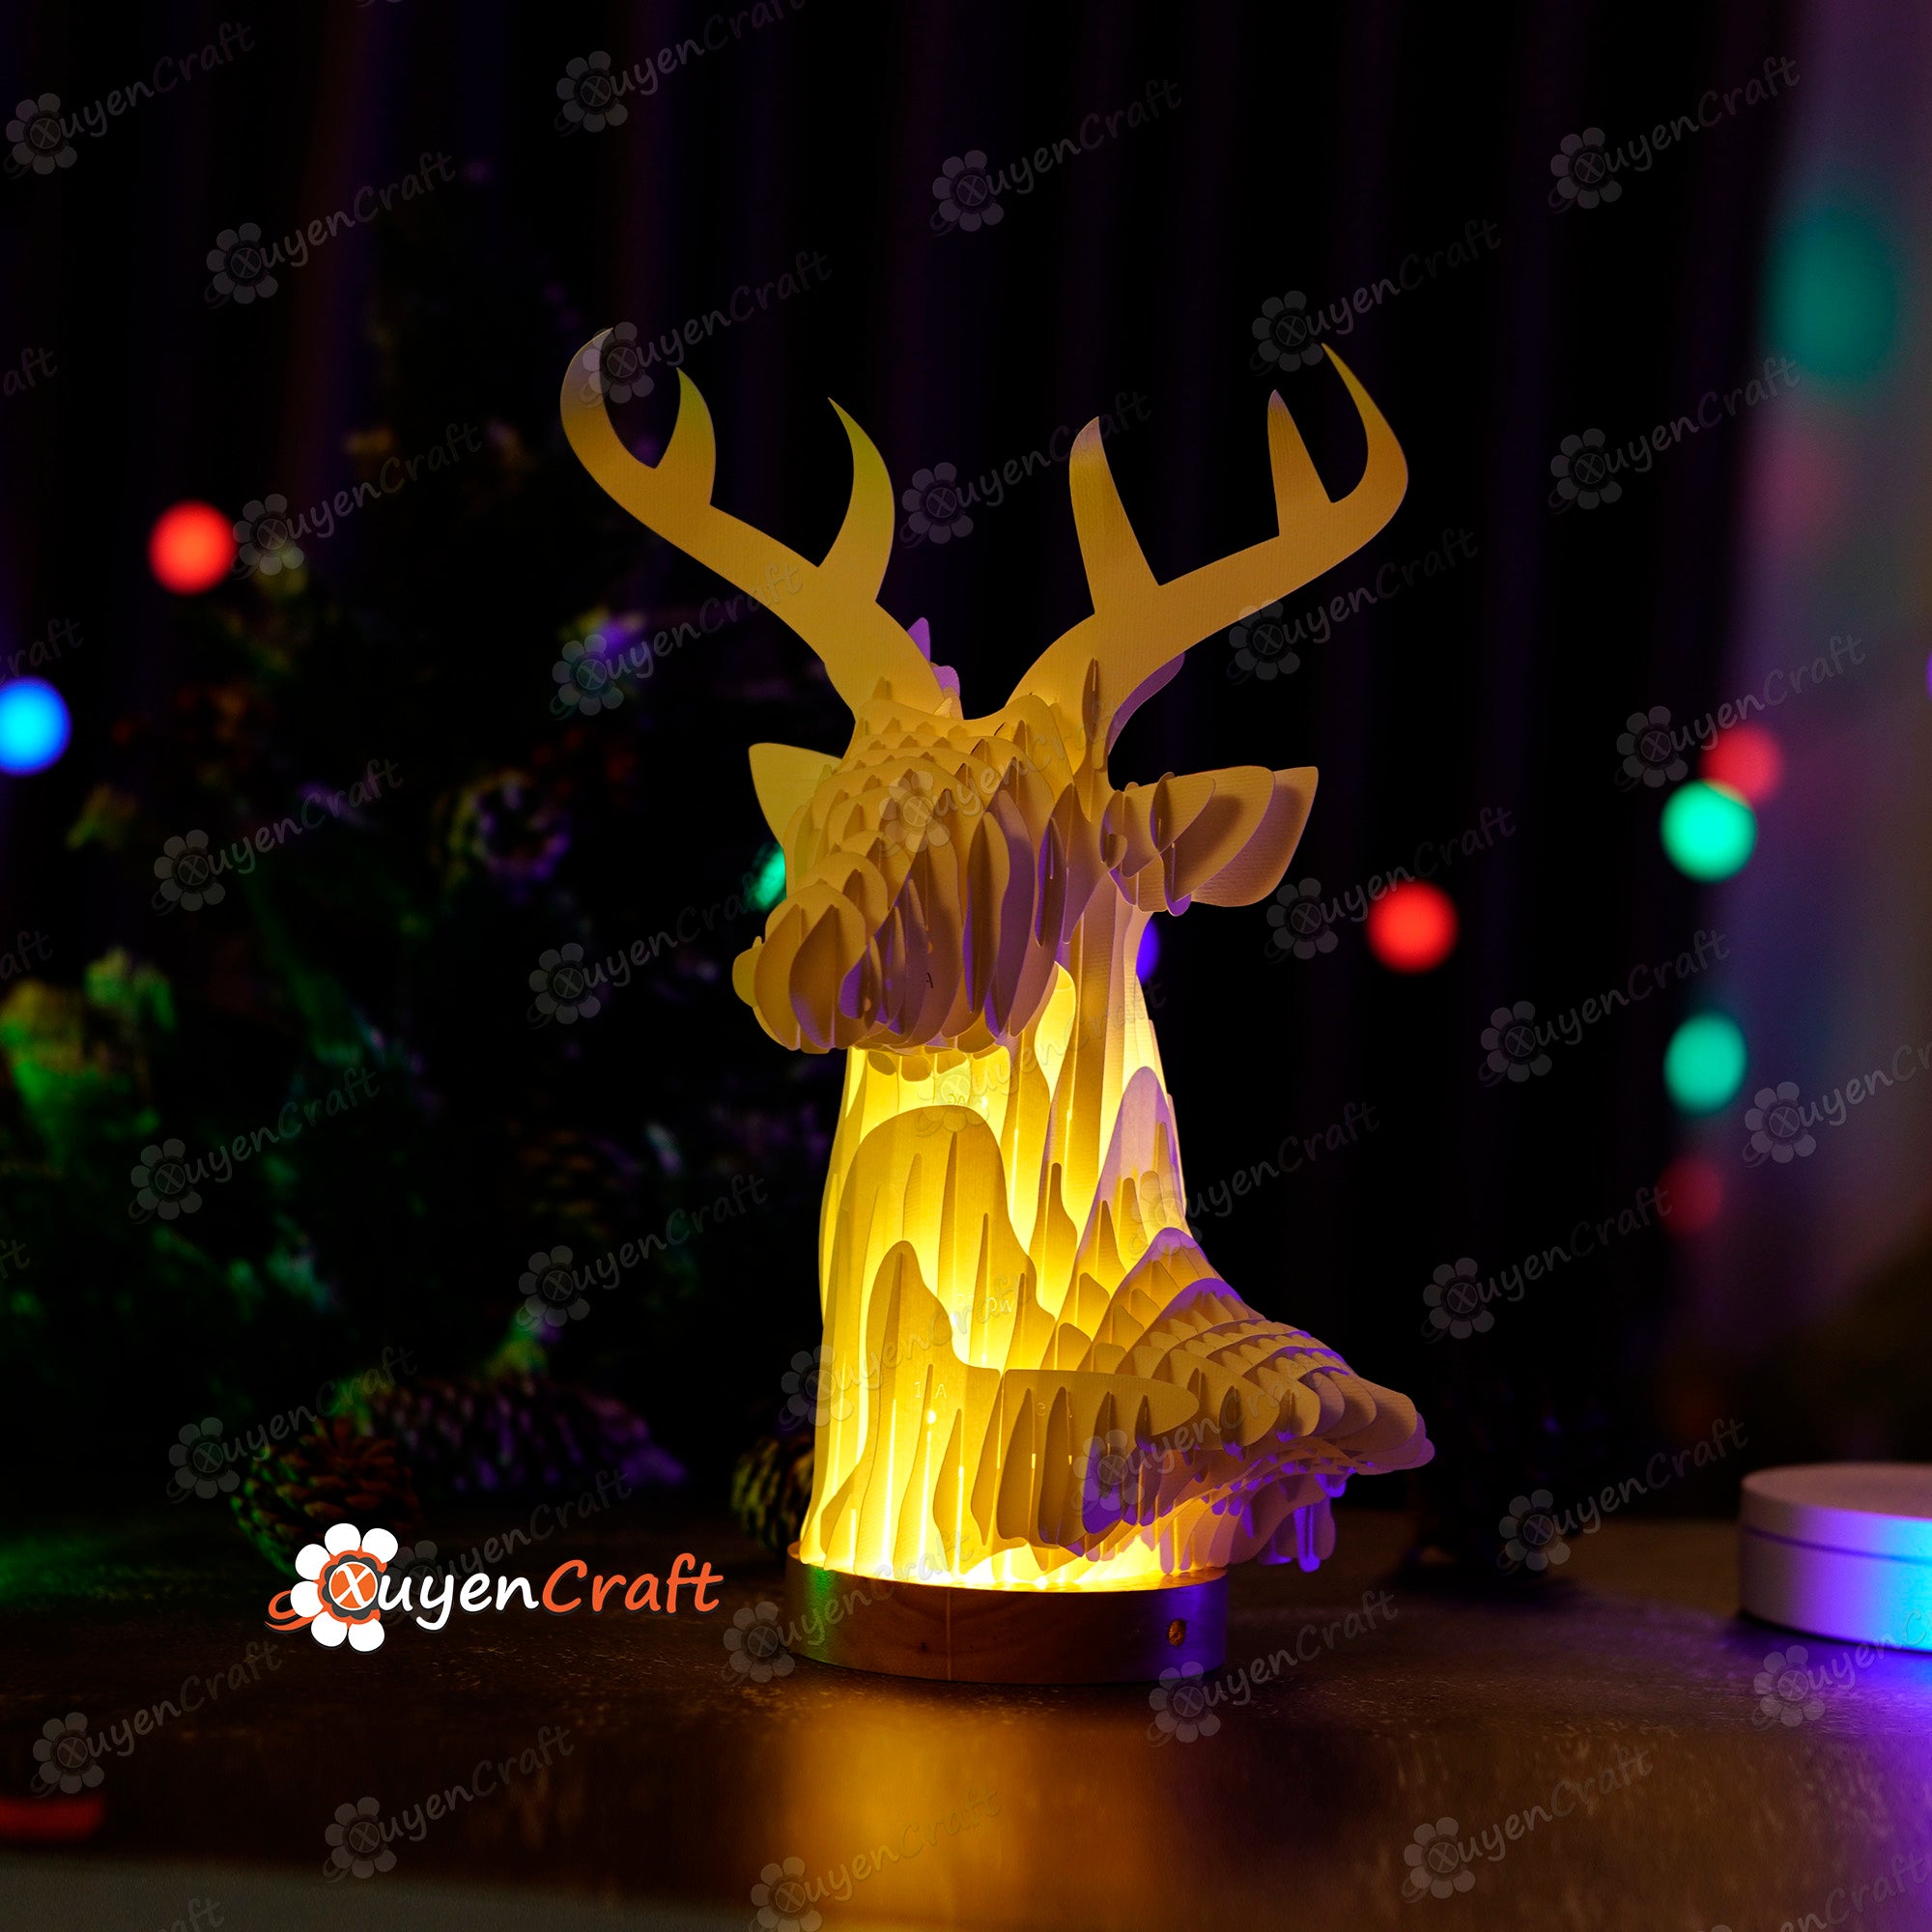 3D Reindeer Sliceform Pop Up SVG Template creating Deer Head Pop Up - Diy Christmas Decorations for Merry Christmas - Sliceform Papercraft